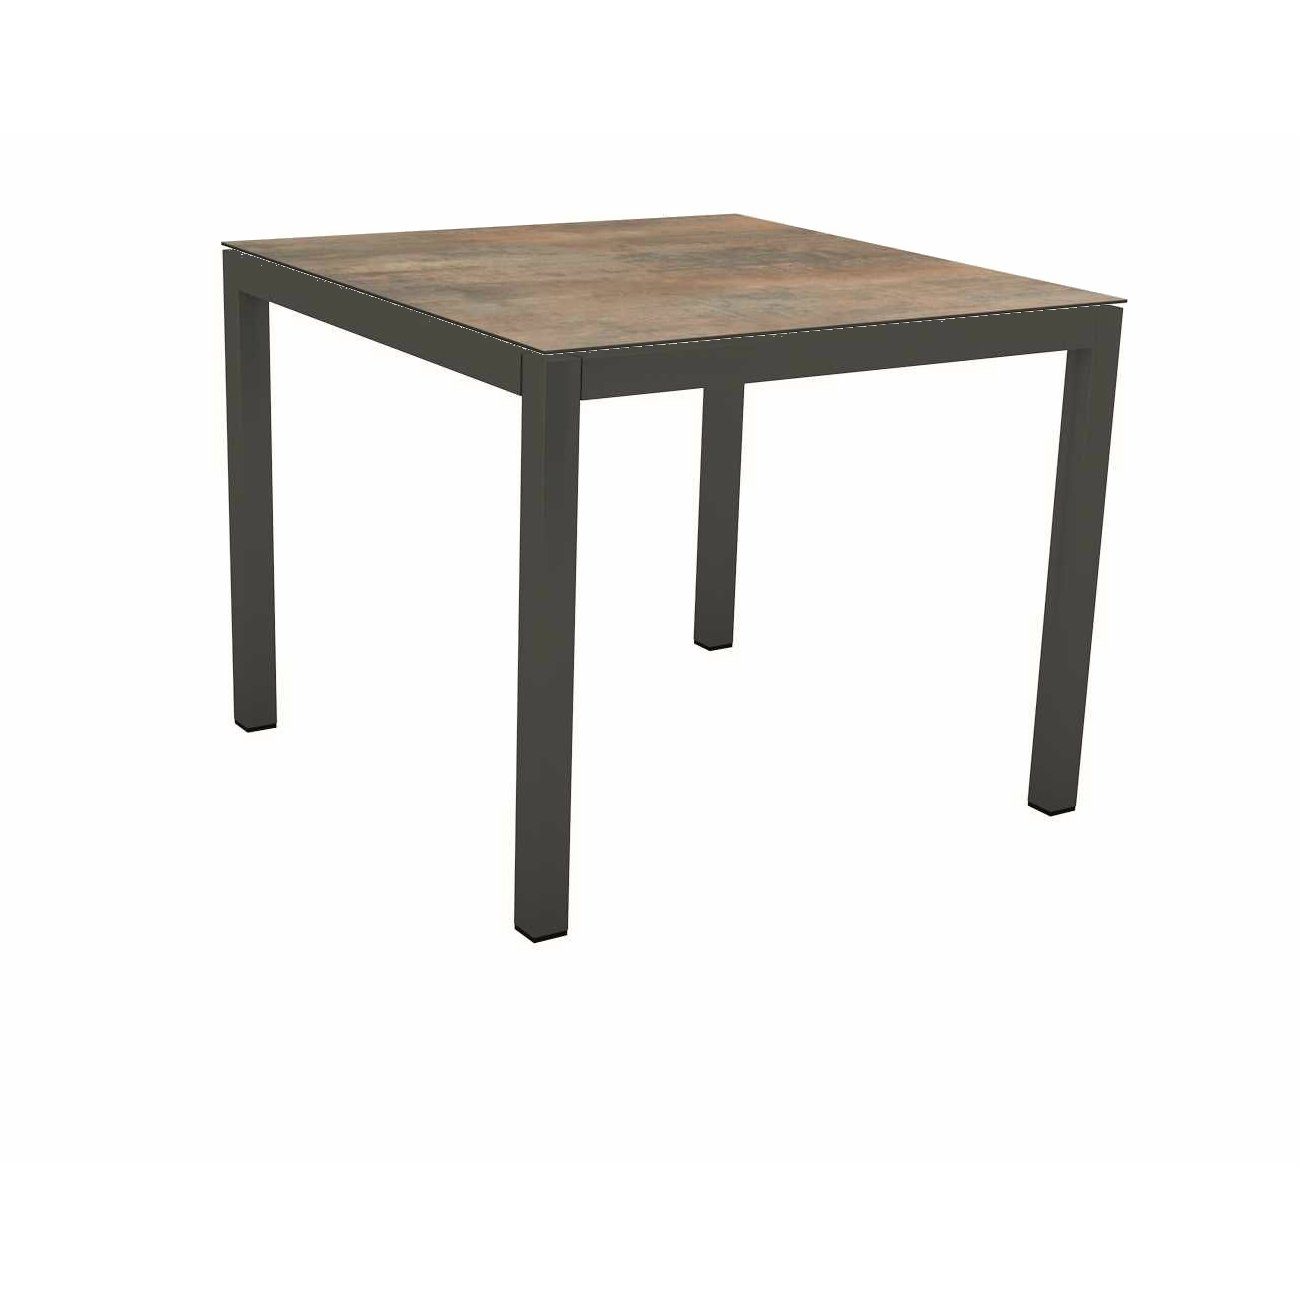 Stern Tischsystem Gartentisch, Gestell Aluminium anthrazit, Tischplatte HPL Ferro, Maße: 80x80 cm